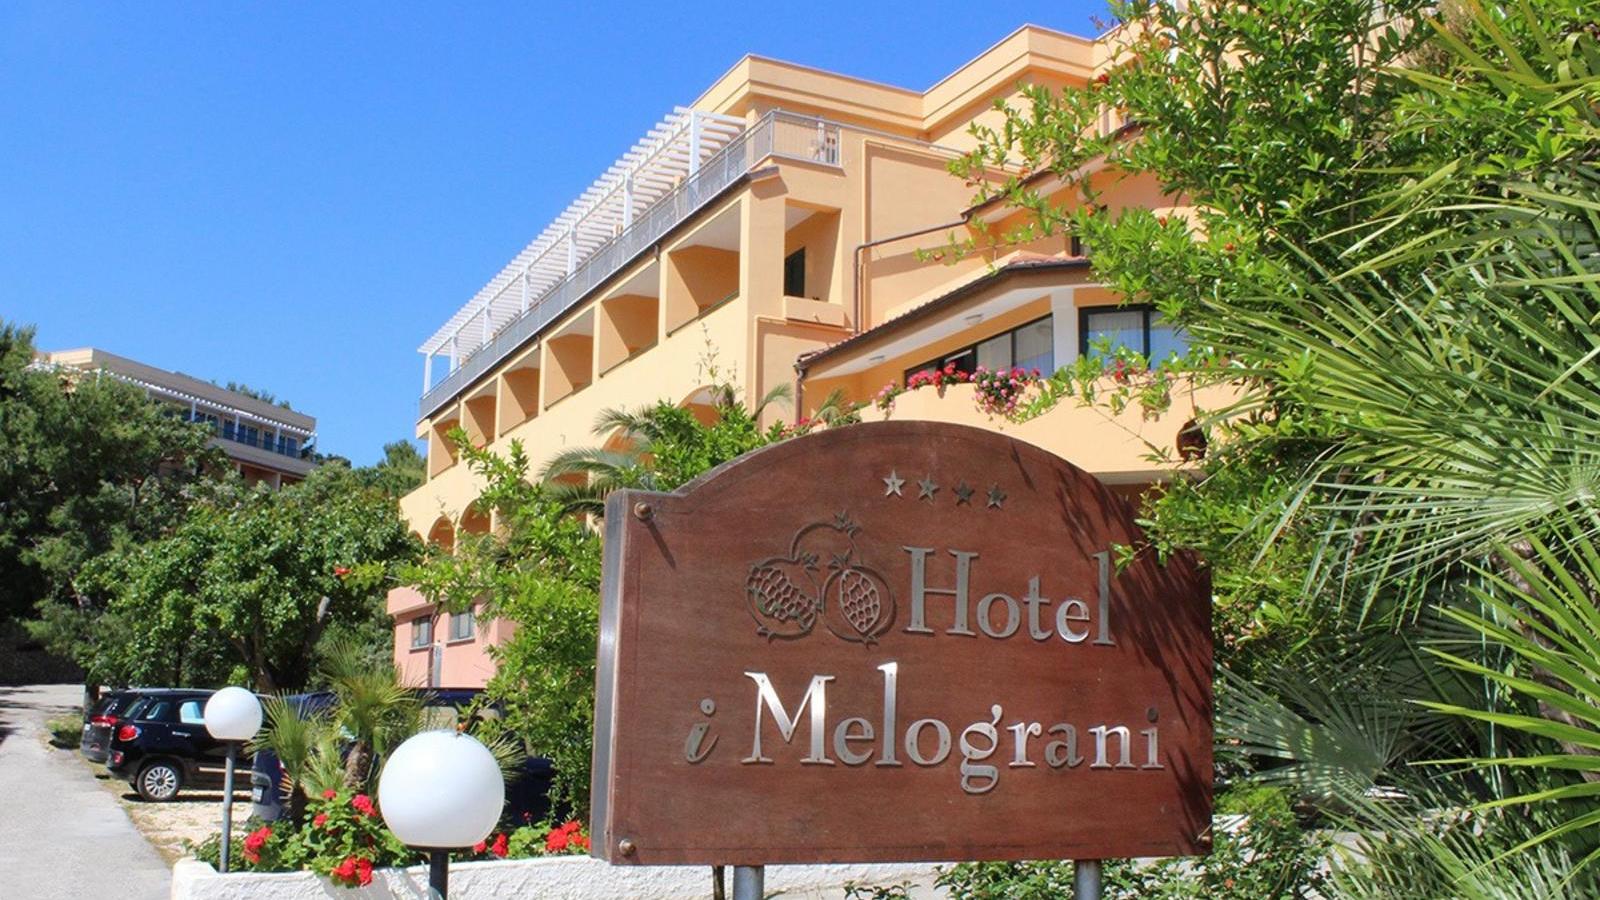 Miglior albergo di Vieste - Hotel I Melograni | Localtourism.it